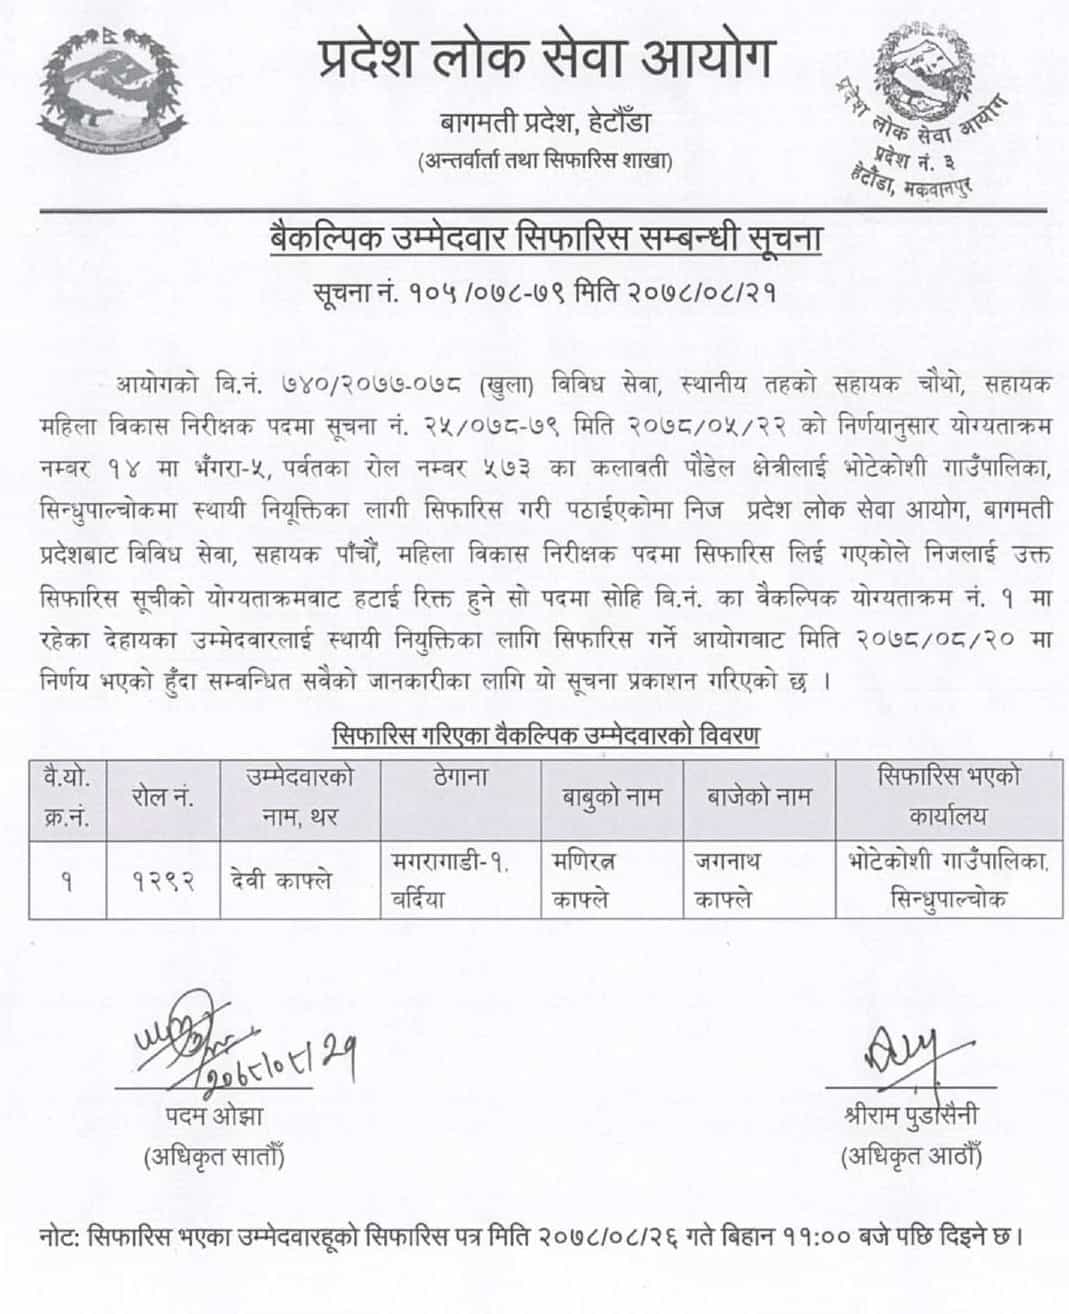 Bagmati Pradesh Lok Sewa Aayog Recommended Alternative Candidate for 4th Level Sahayak Mahila Bikas Nirikshak